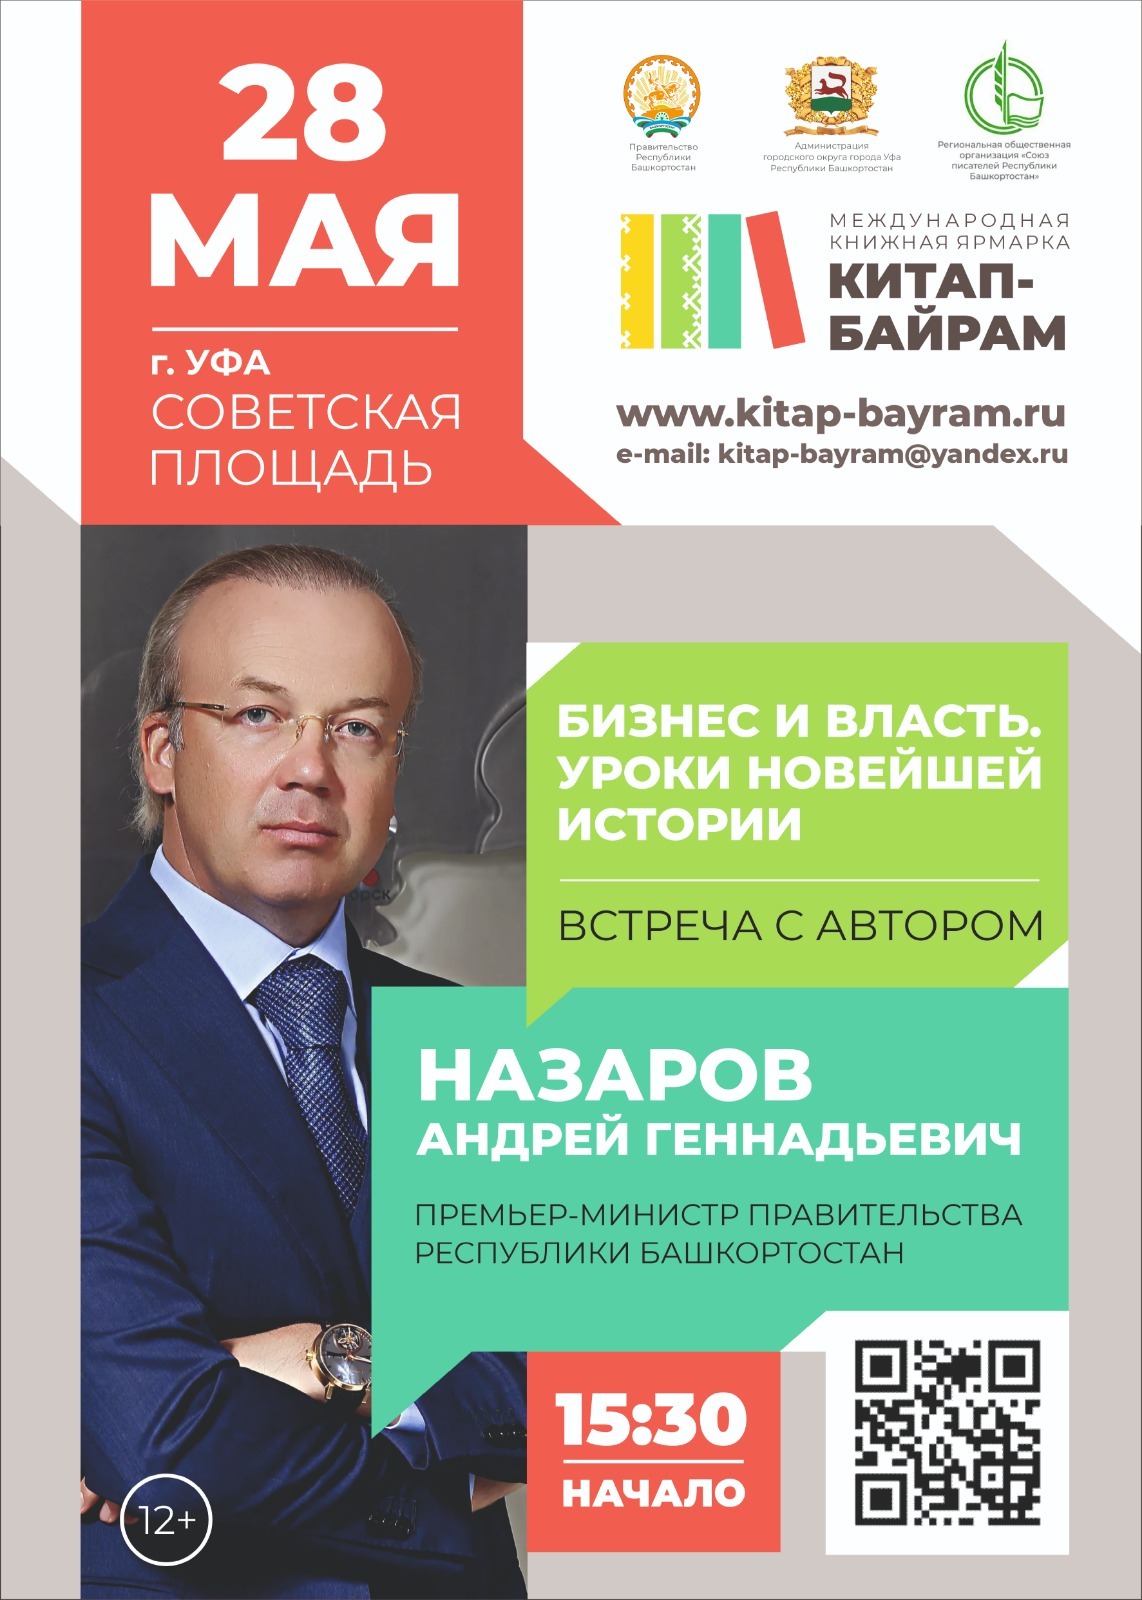 Министр культуры Башкирии рассказала об особенностях программы книжной ярмарки «Китап-байрам» в Уфе